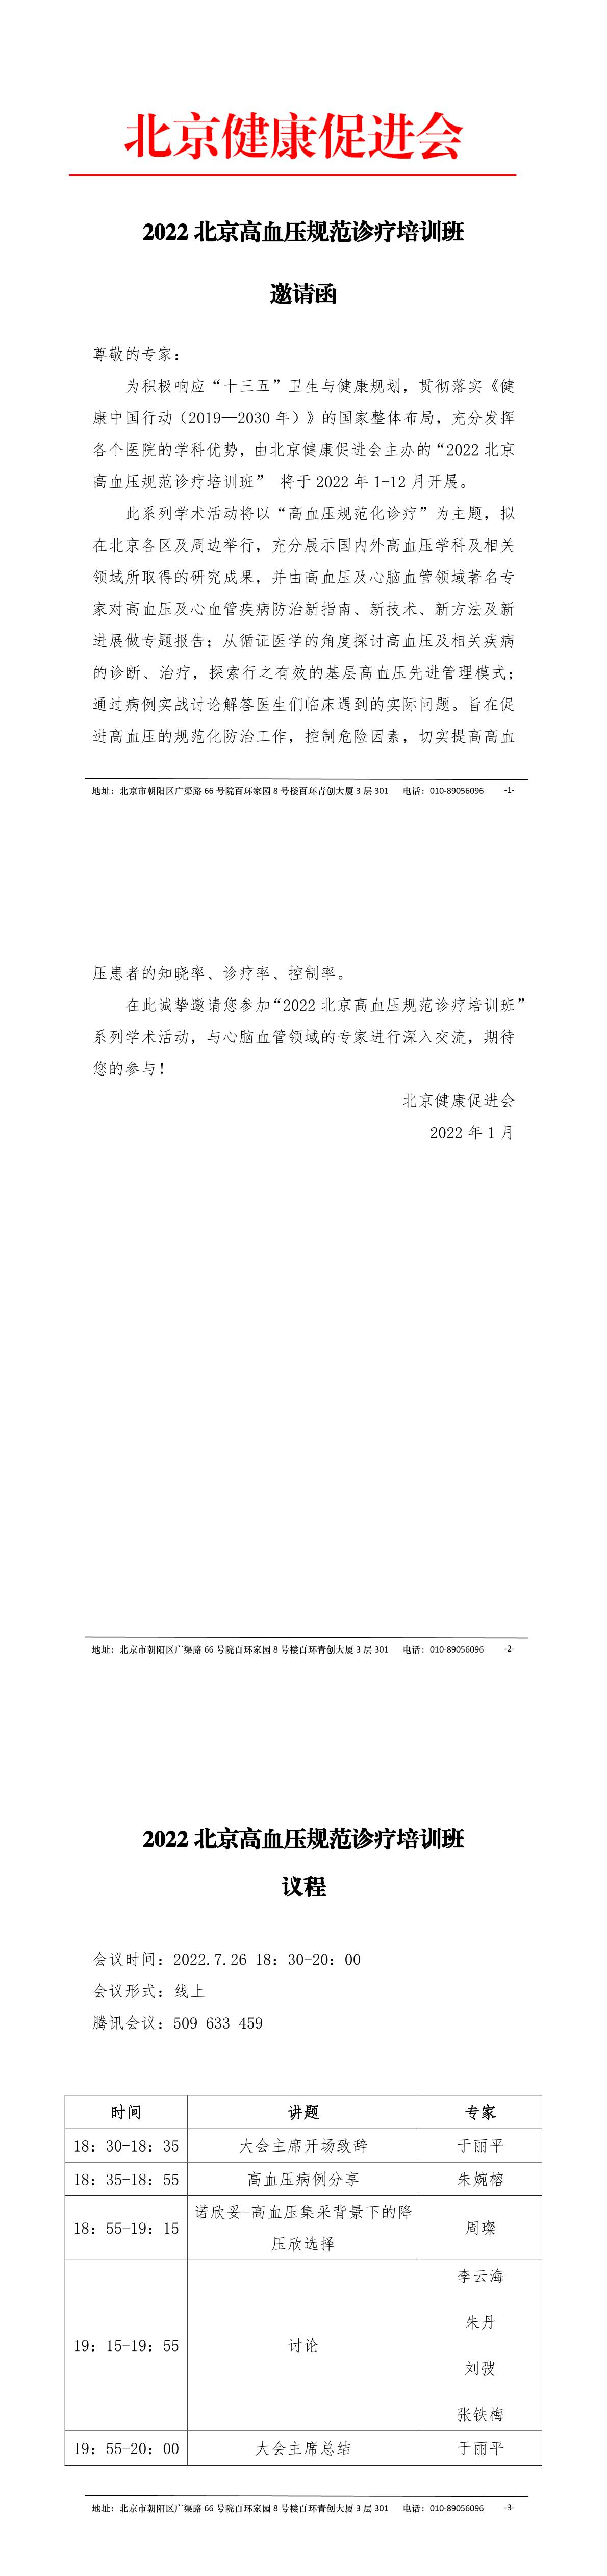 2022北京高血压规范诊疗培训班邀请函（7.26）-1.jpg